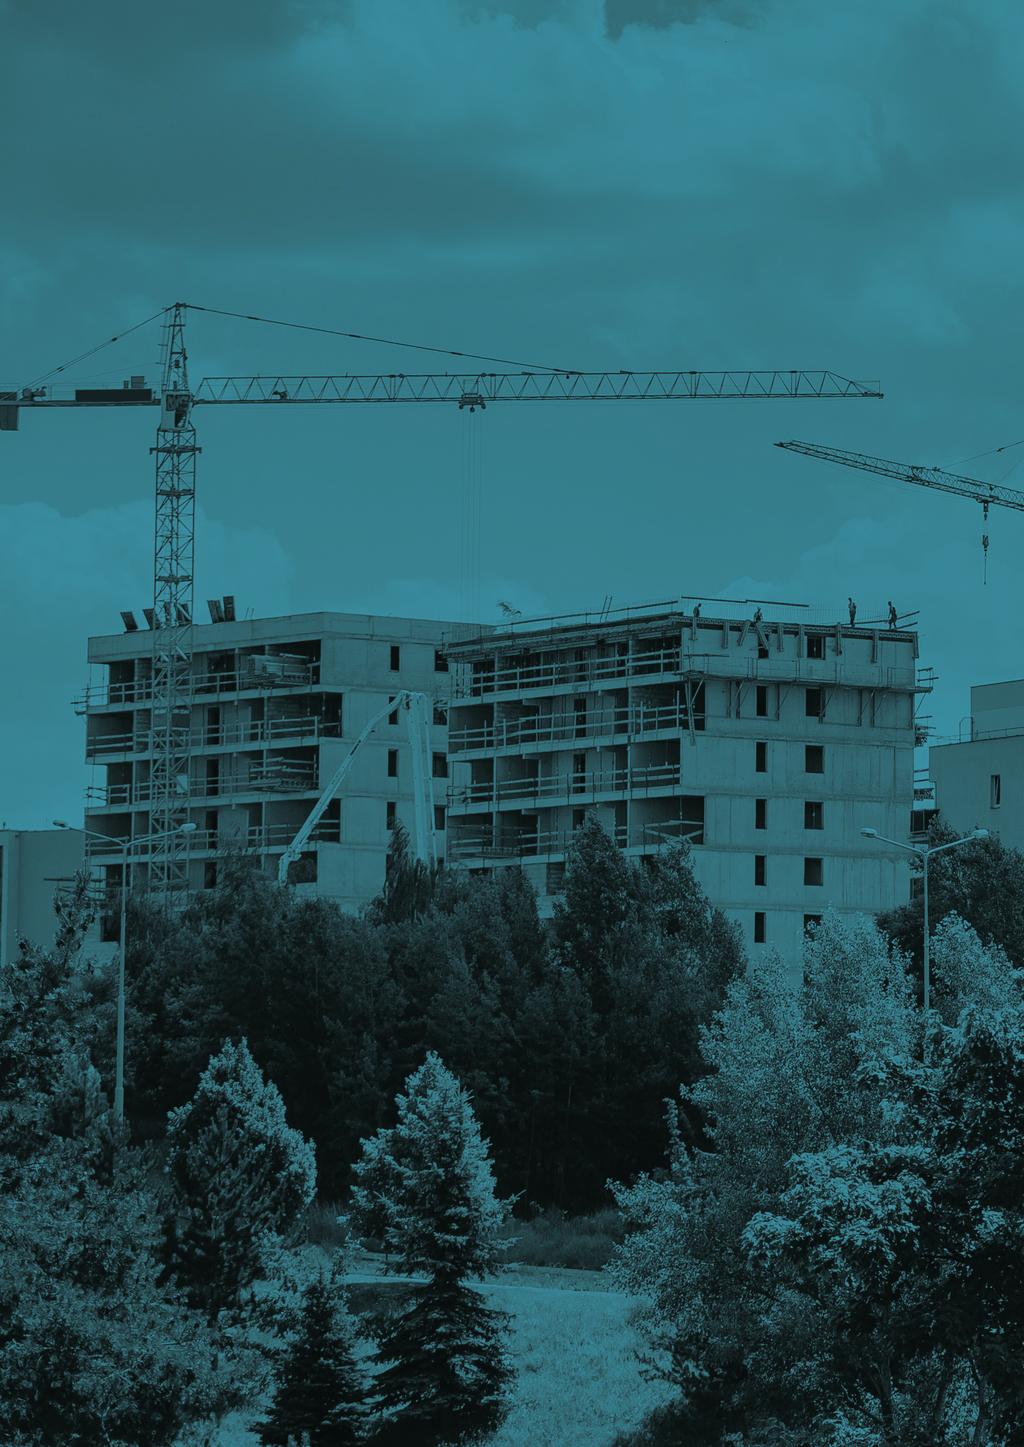 Územní analýza aktuálních developerských projektů výstavby bytových domů v Praze [2017]